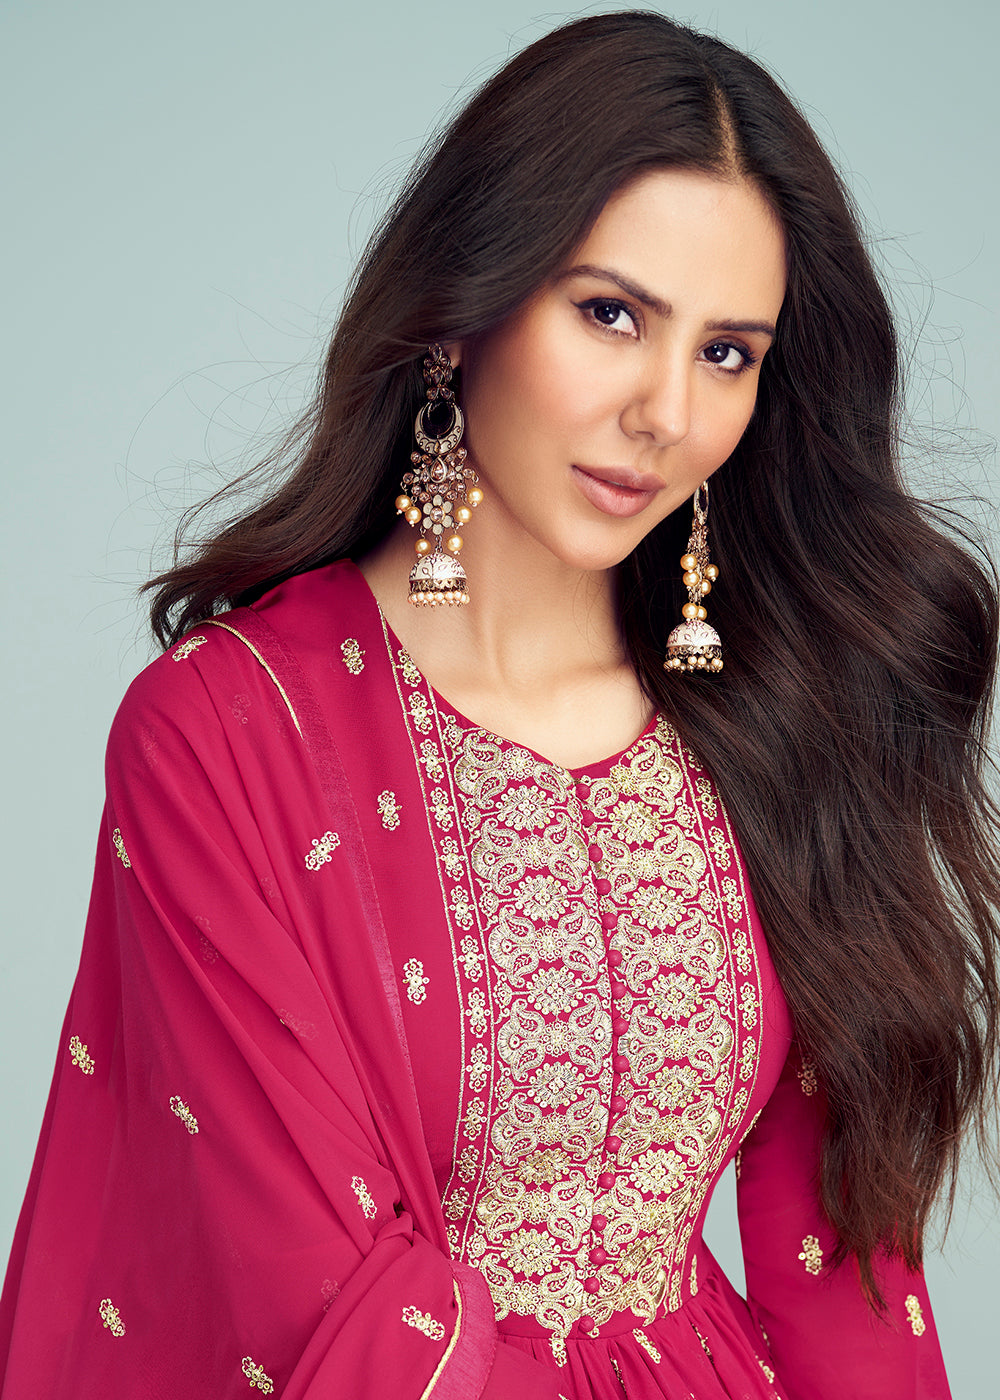 Shop Now Hot Pink Georgette Embellished Wedding Anarkali Suit Online featuring Sonam Bajwa at Empress Clothing in UK.